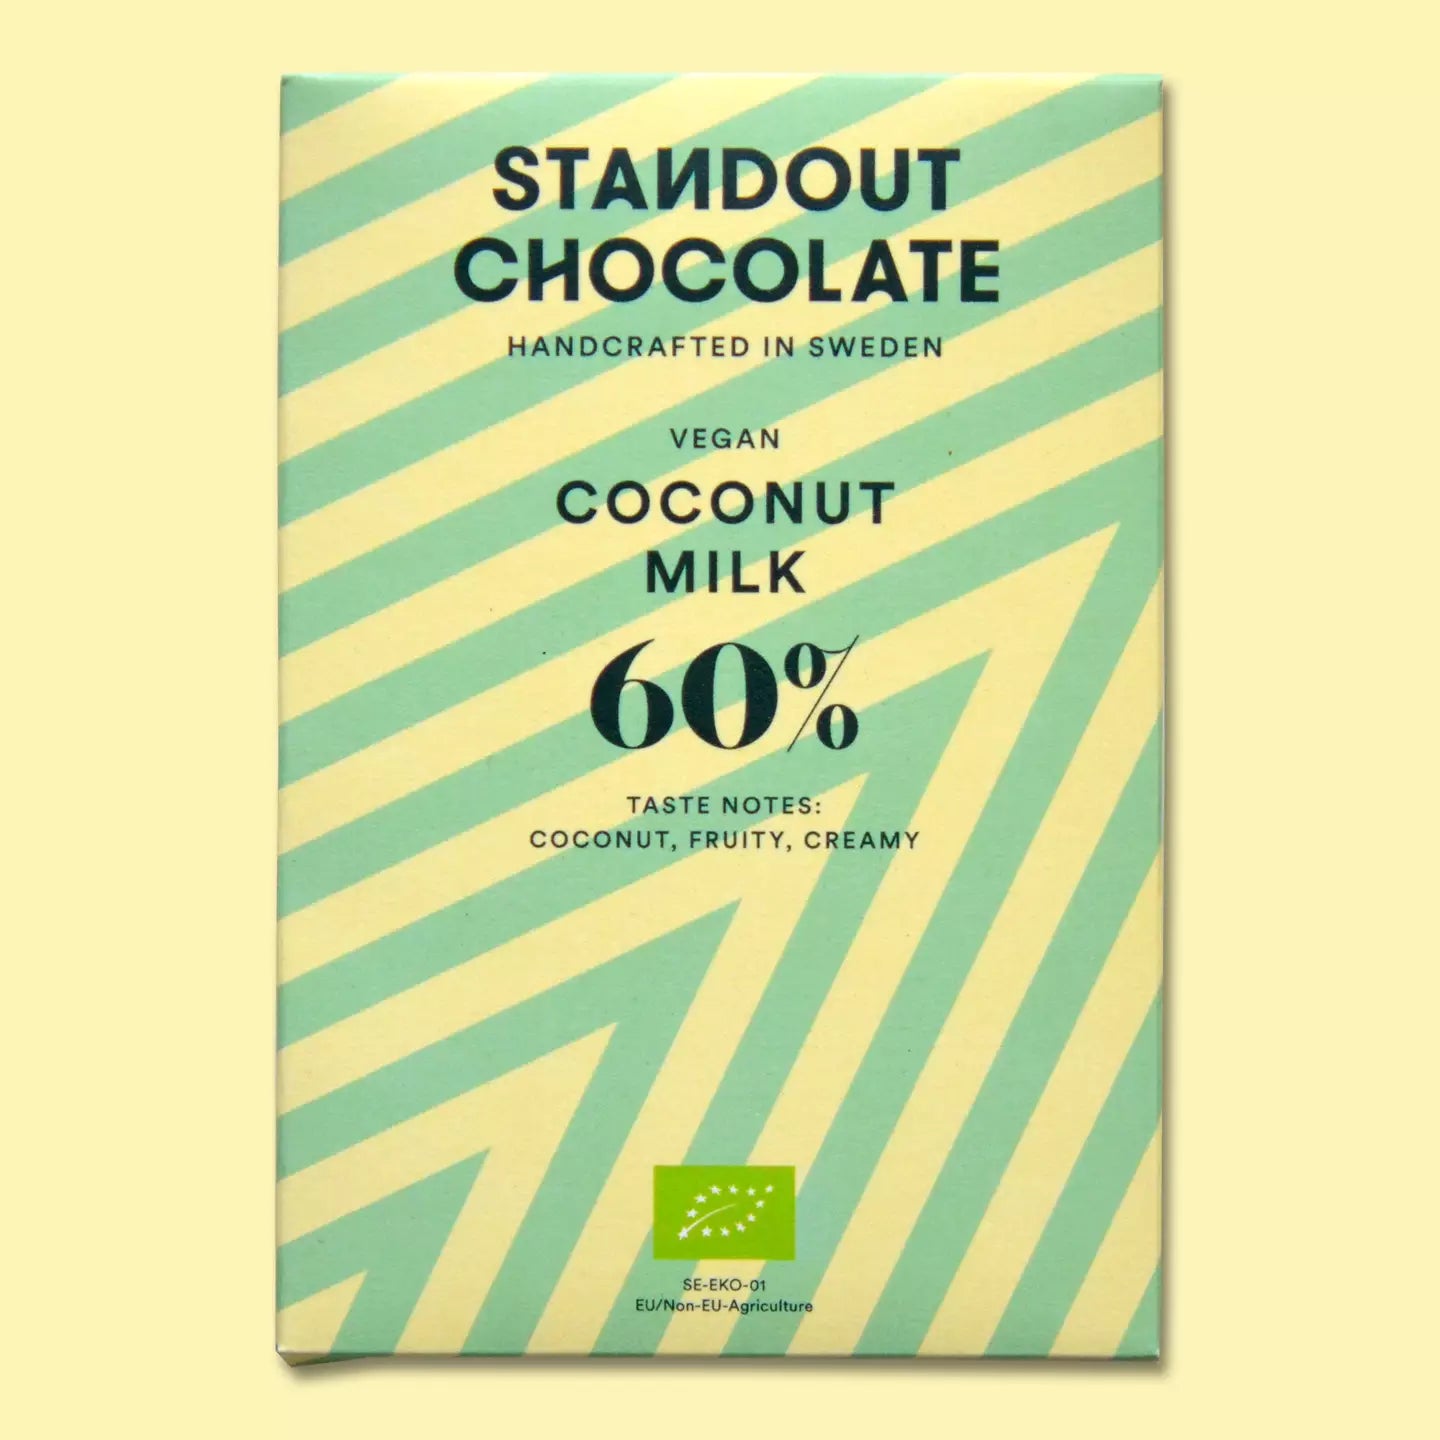 Standout Vegan Coconut Milk